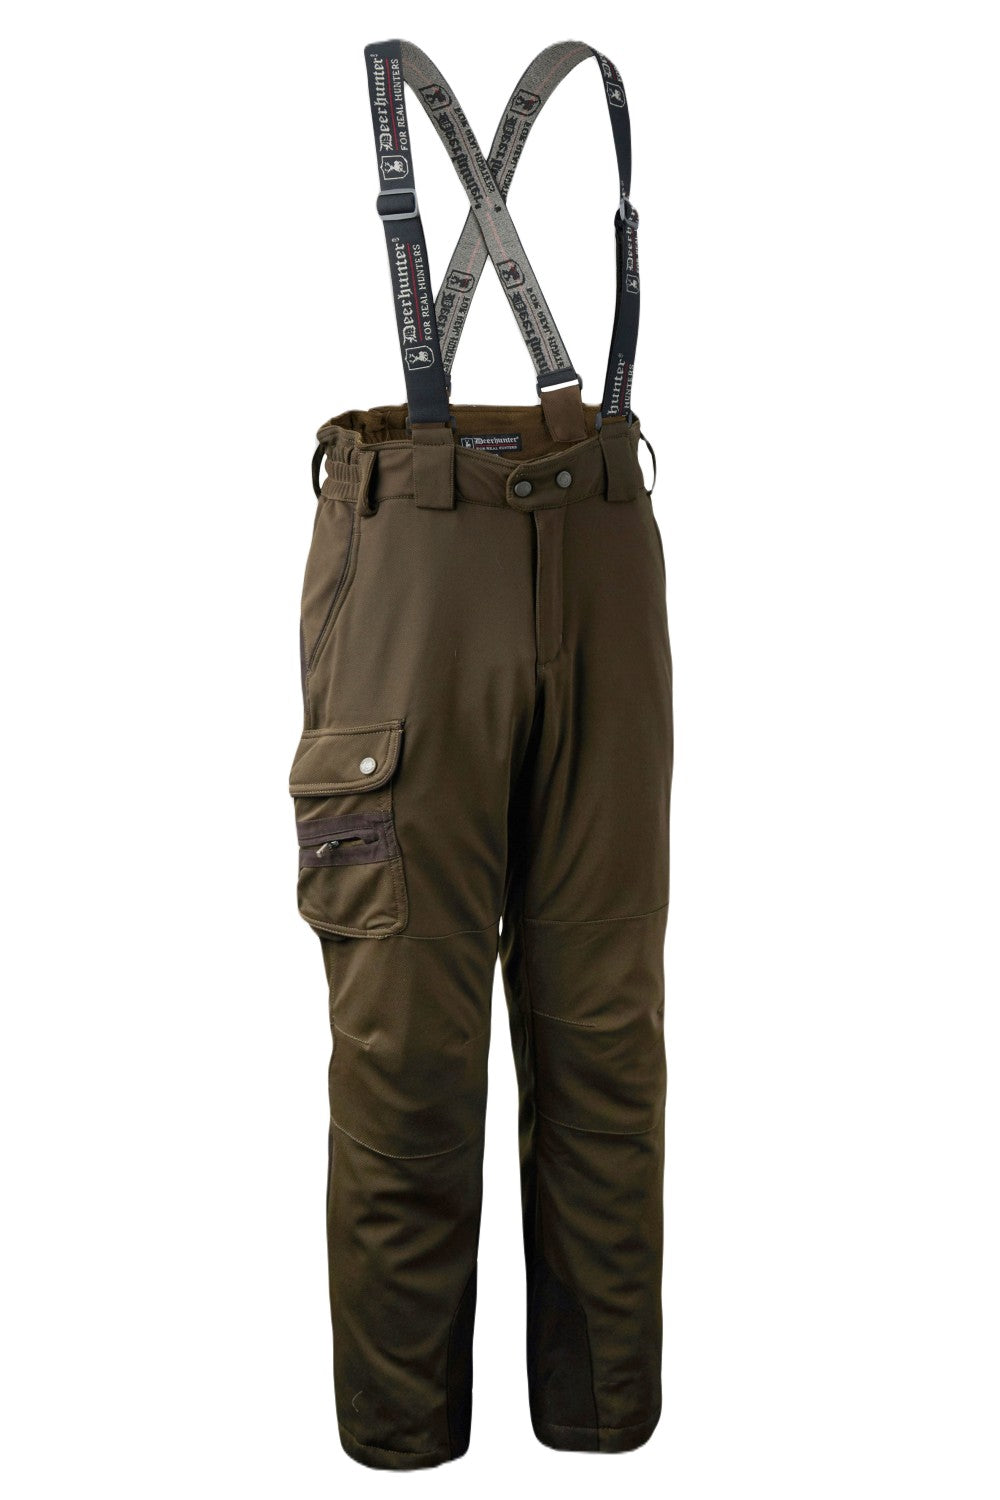 Deerhunter Muflon Bib  Brace Waterproof Trousers  eBay